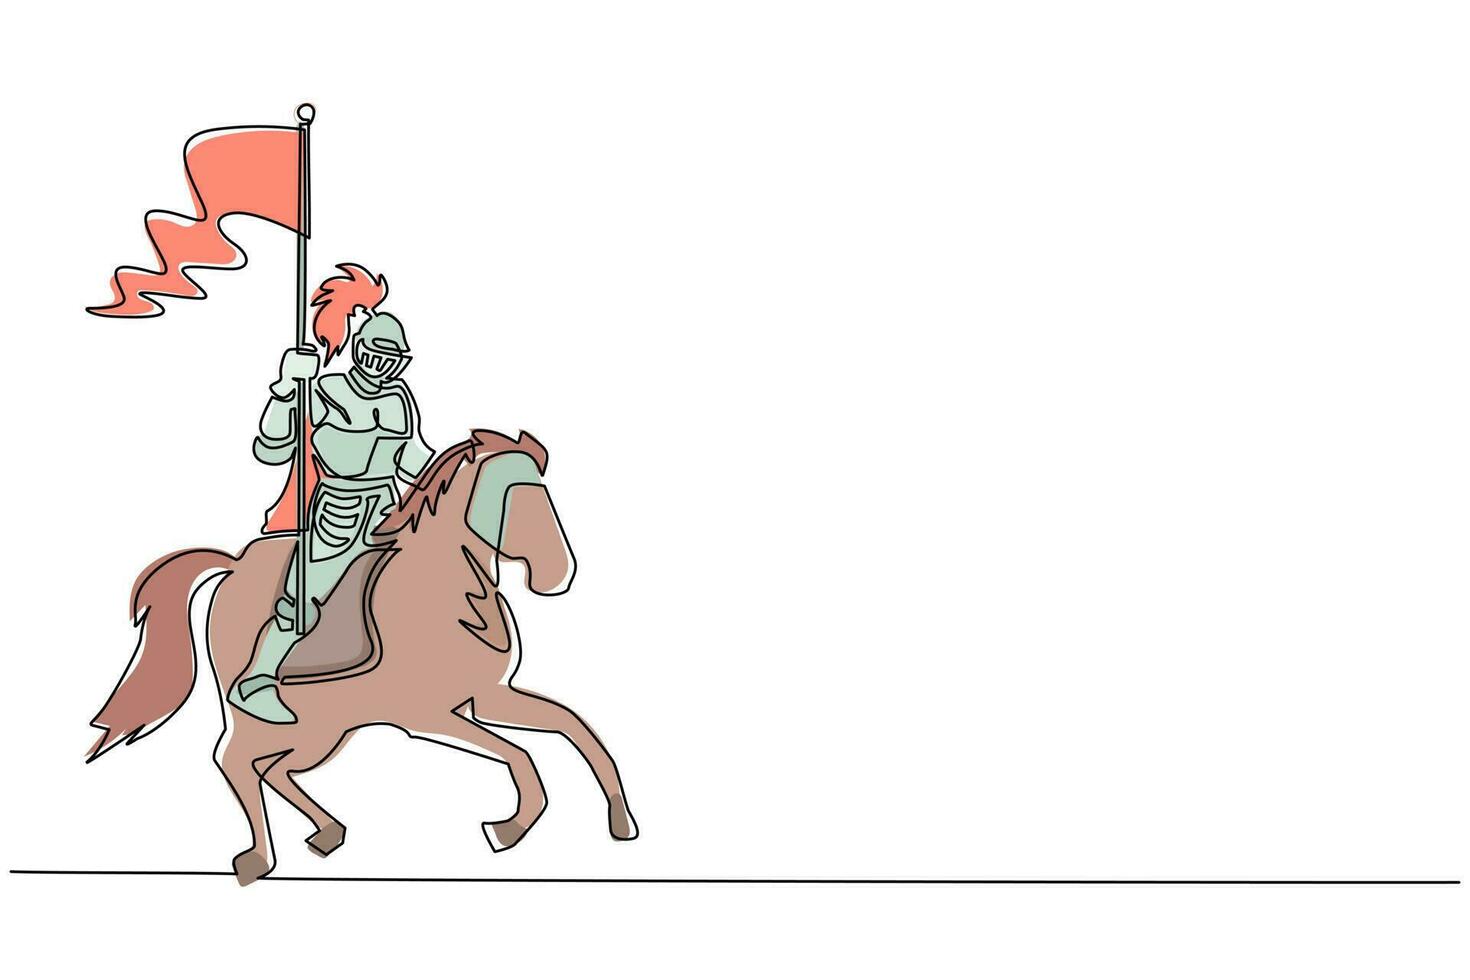 única linha contínua desenhando cavaleiro medieval a cavalo carregando bandeira. cavaleiro montado em armadura andando a cavalo no cavalo segurando a bandeira. lutador antigo. vetor de design gráfico de desenho dinâmico de uma linha